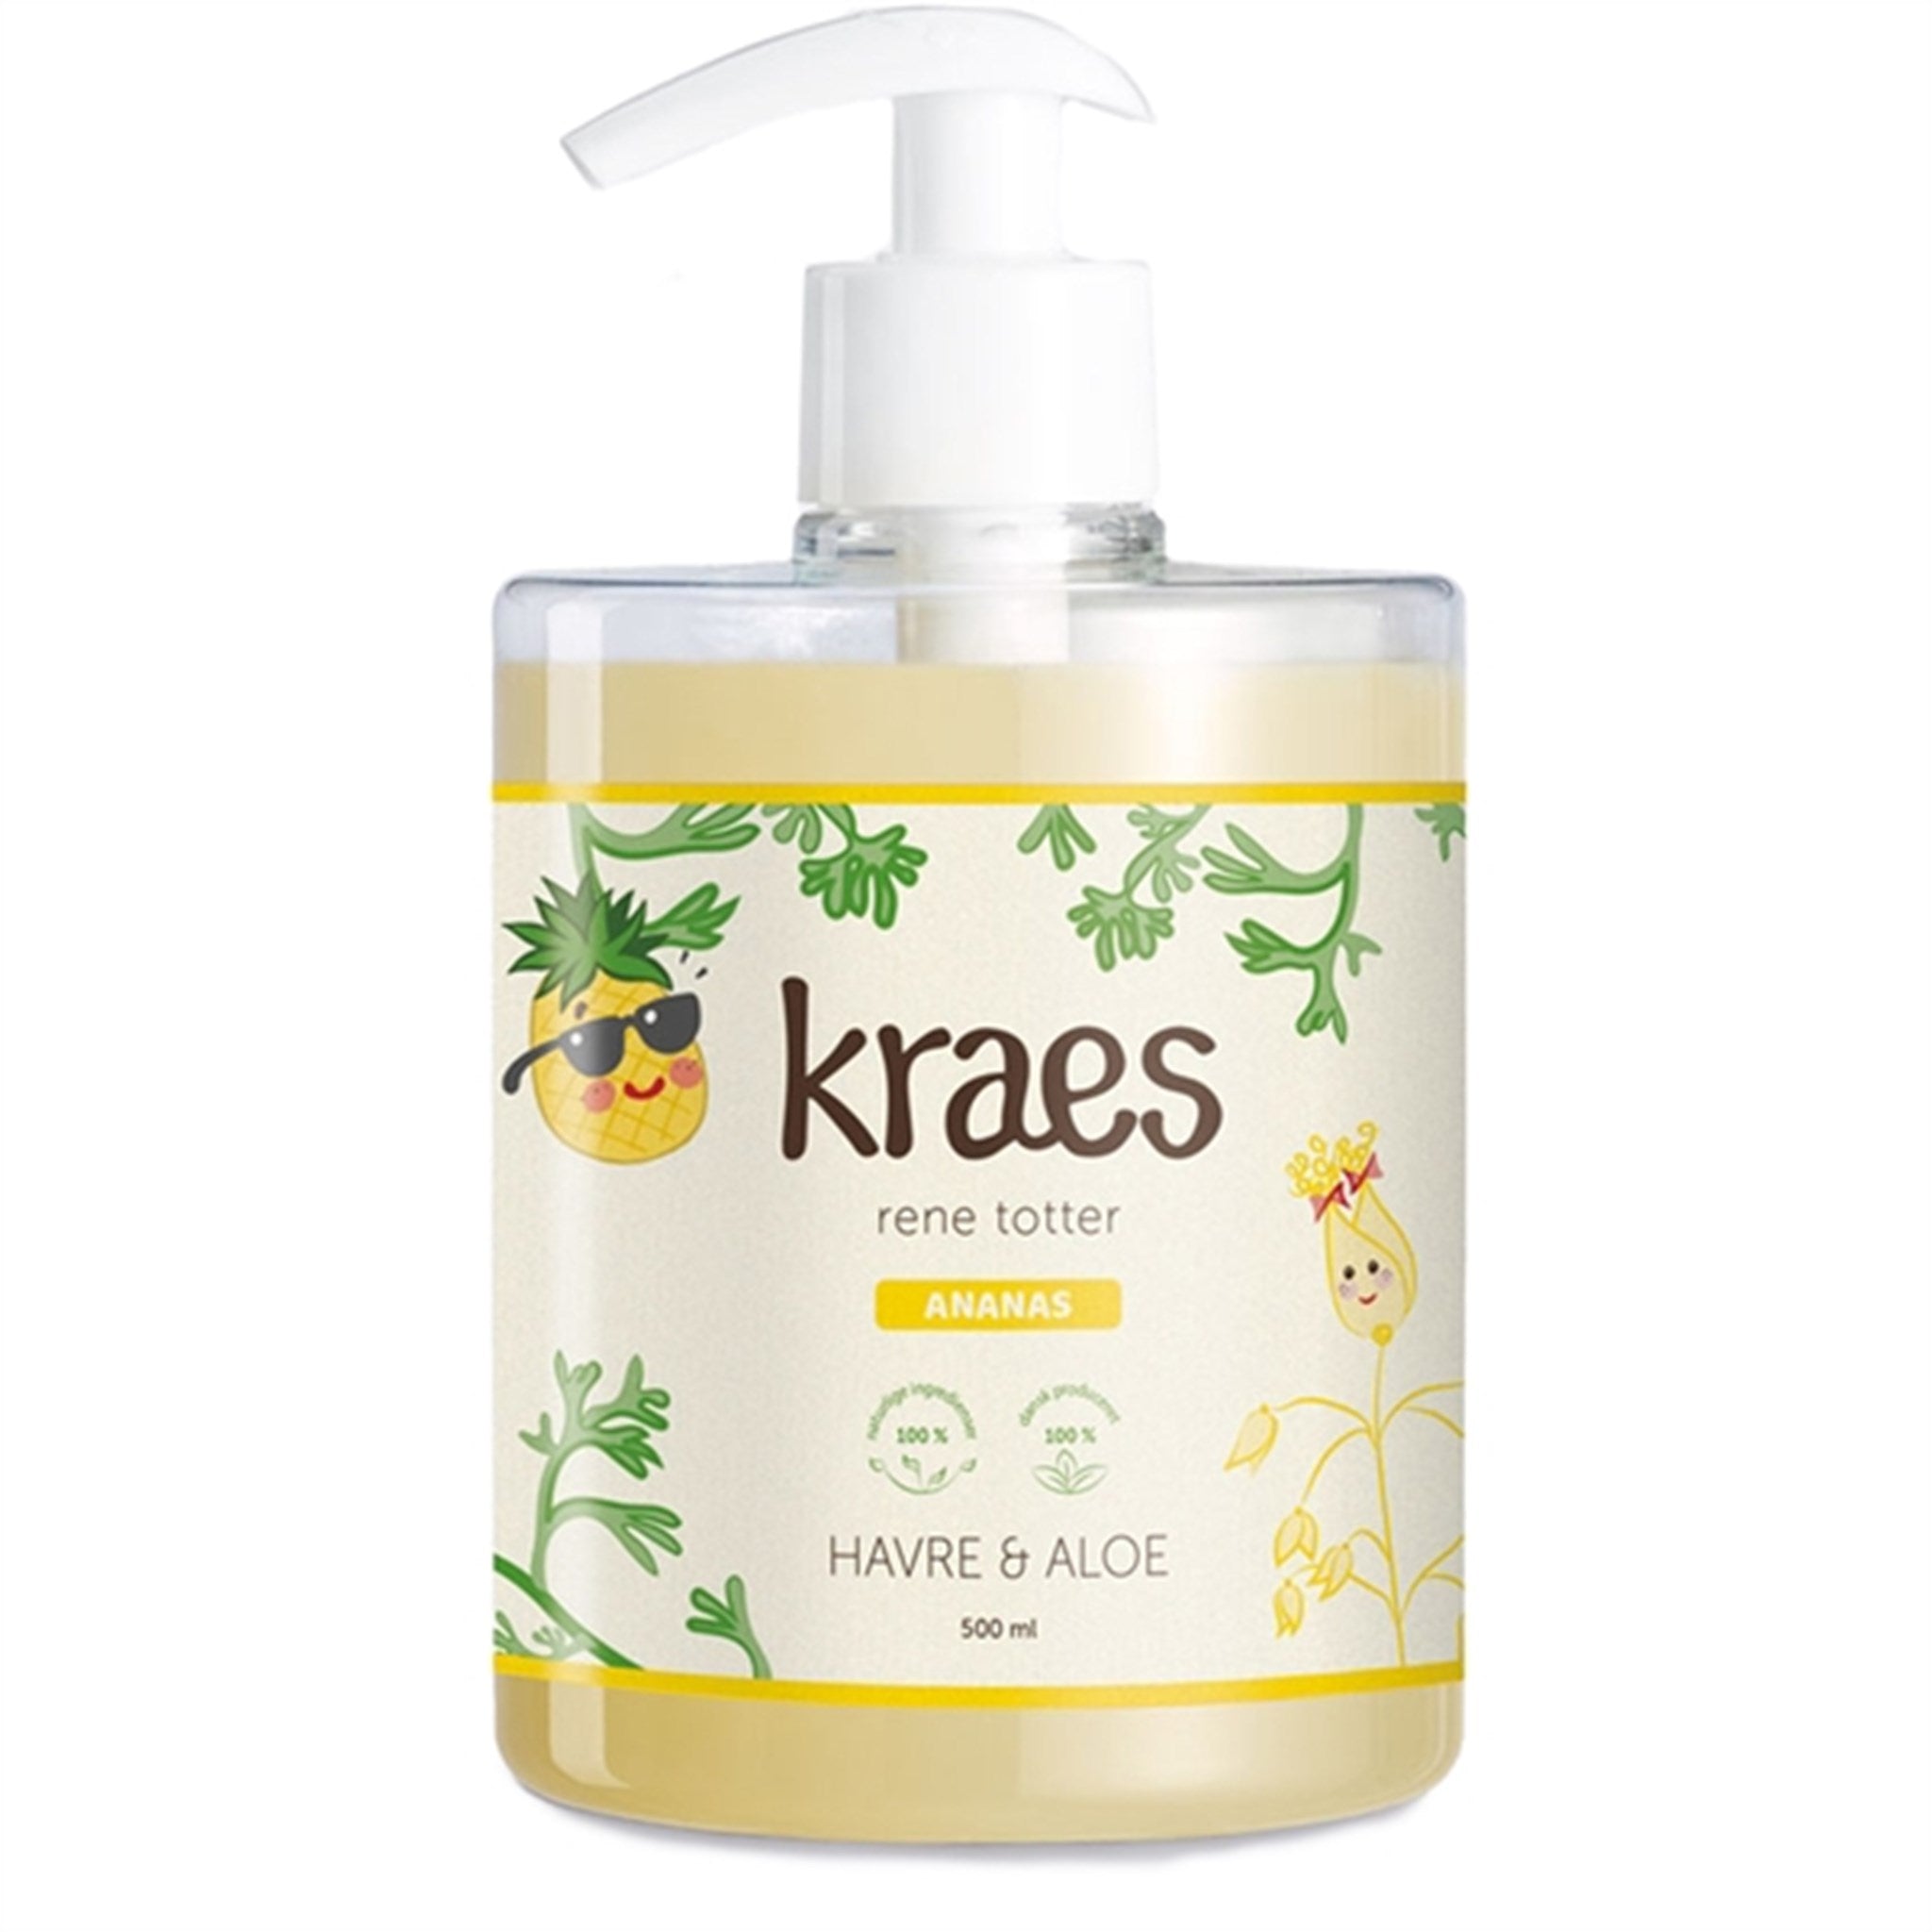 Kraes Rene Totter Havre/Aloe Shampoo with Pineapple Fragrance 500 ml